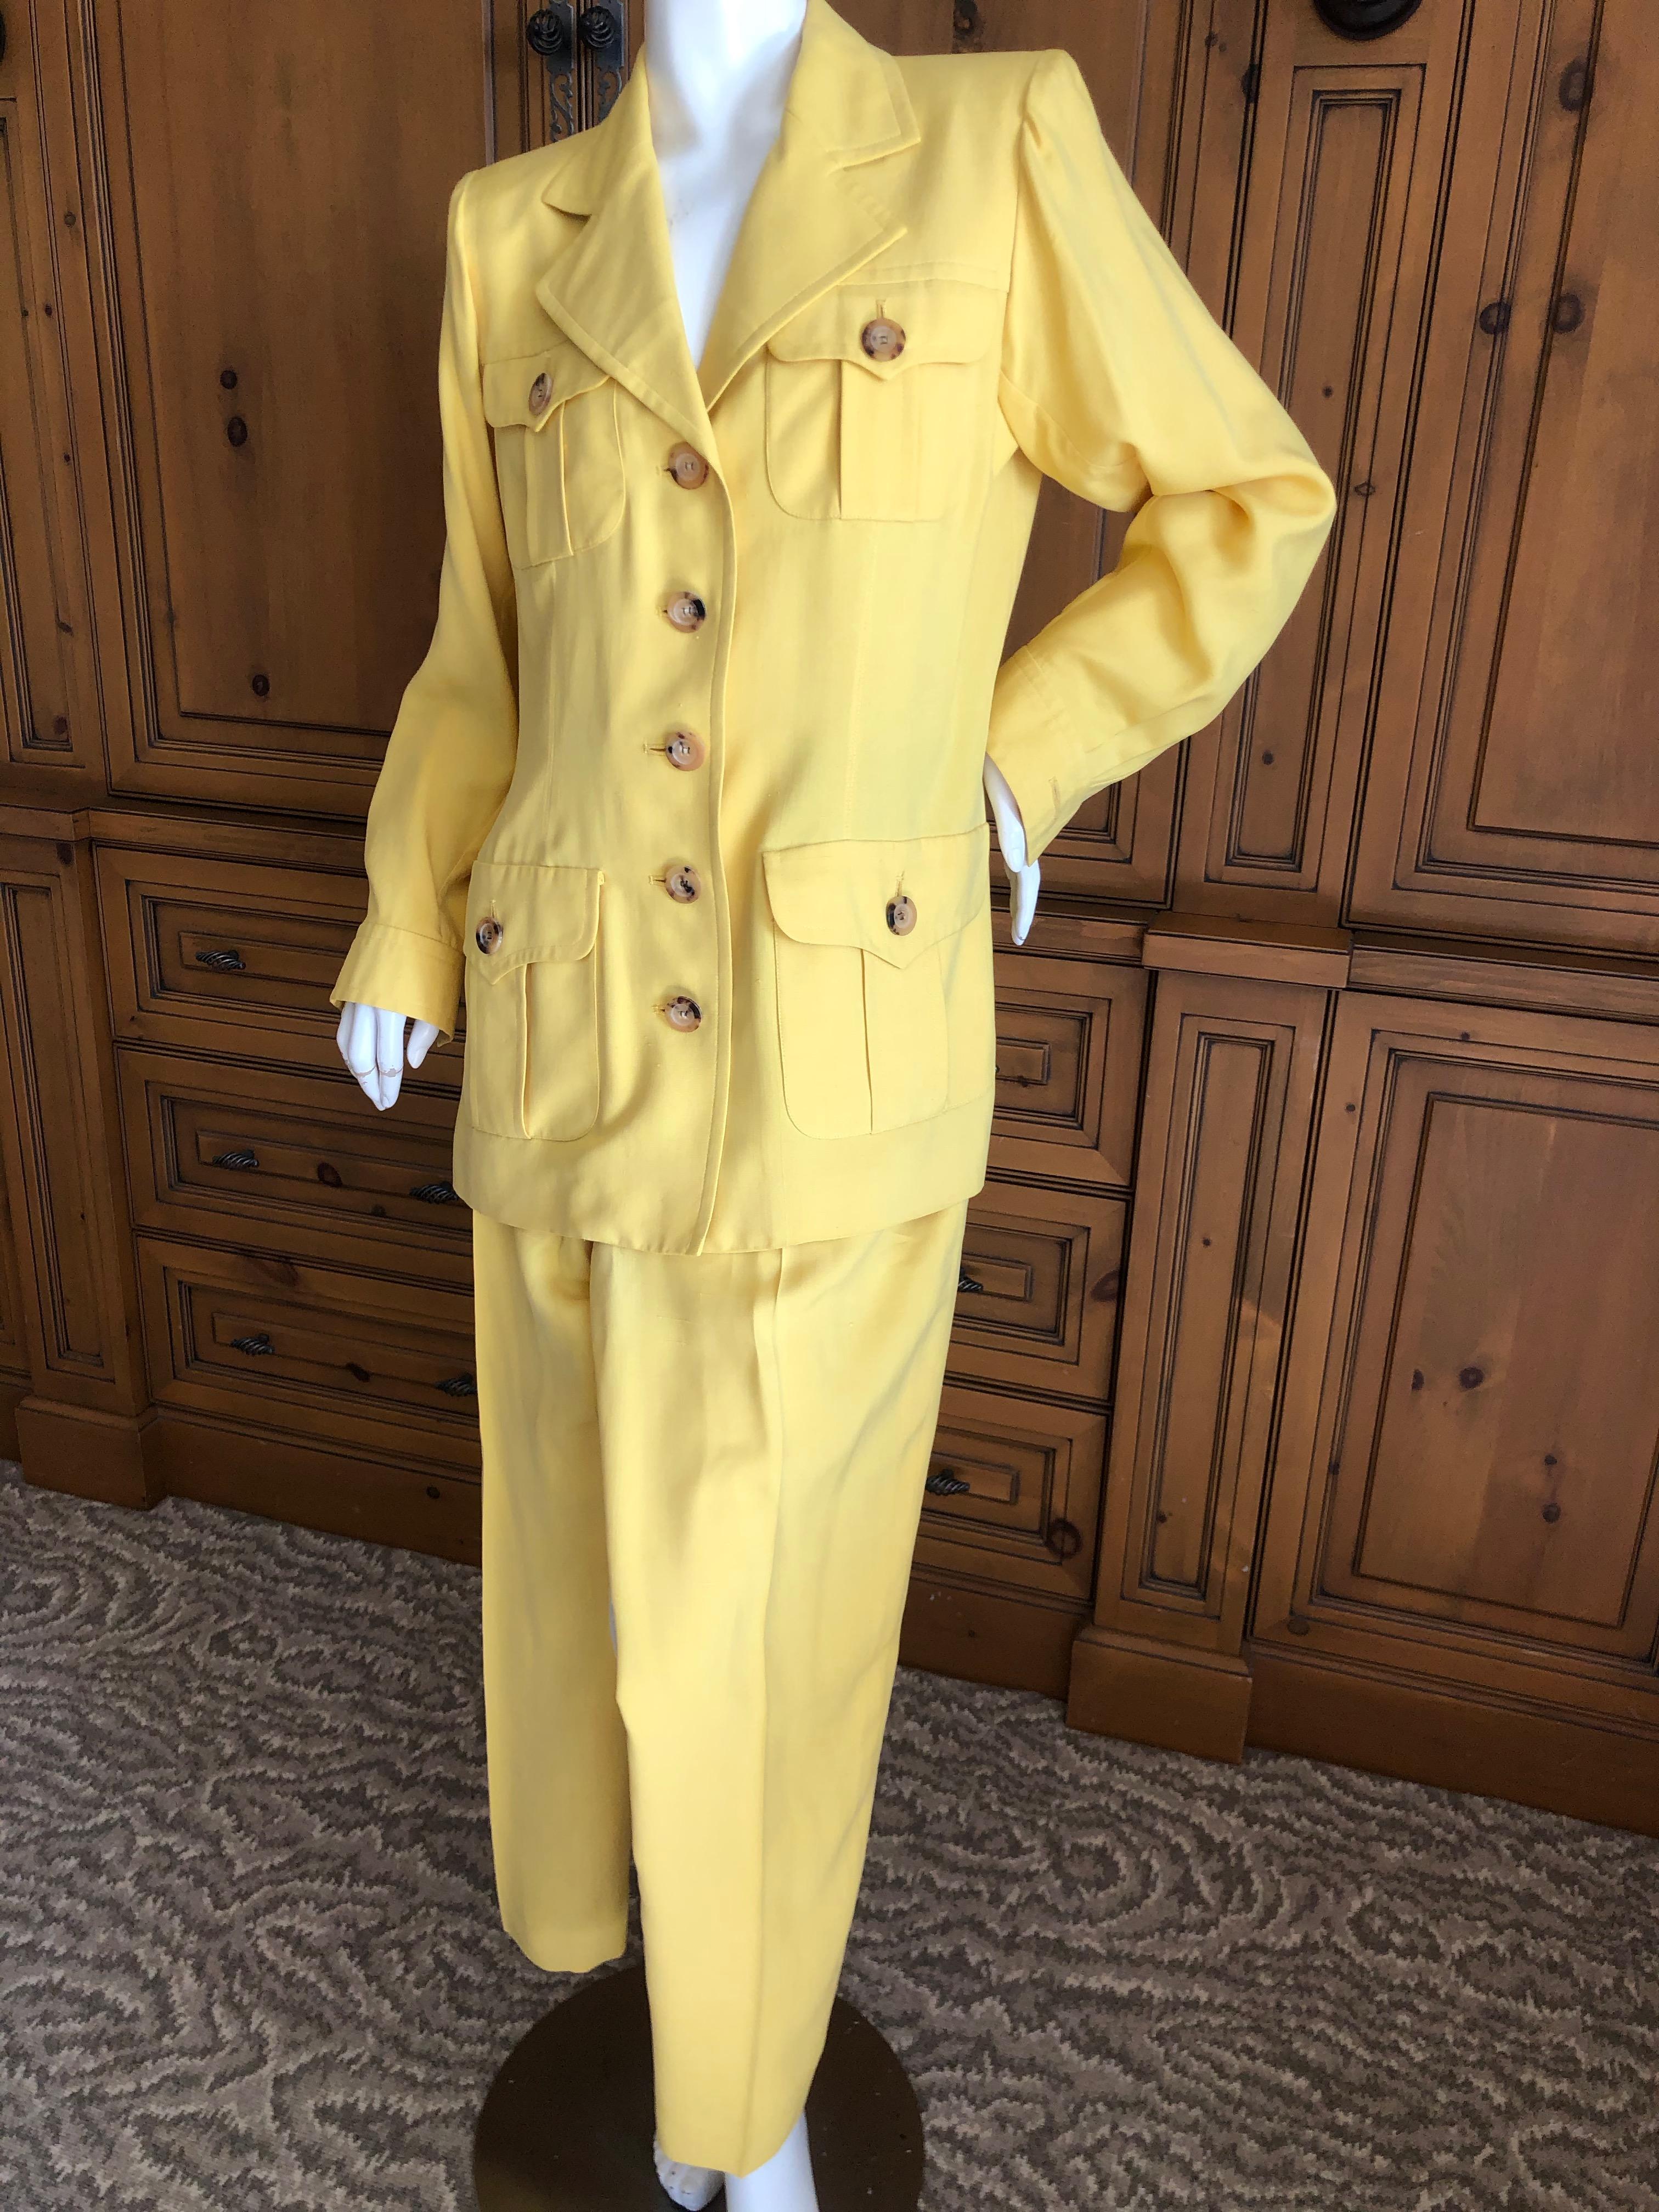 Yves Saint Laurent Vintage 1980's Dupioni Silk Safari Suit
Size 42
Bust 41